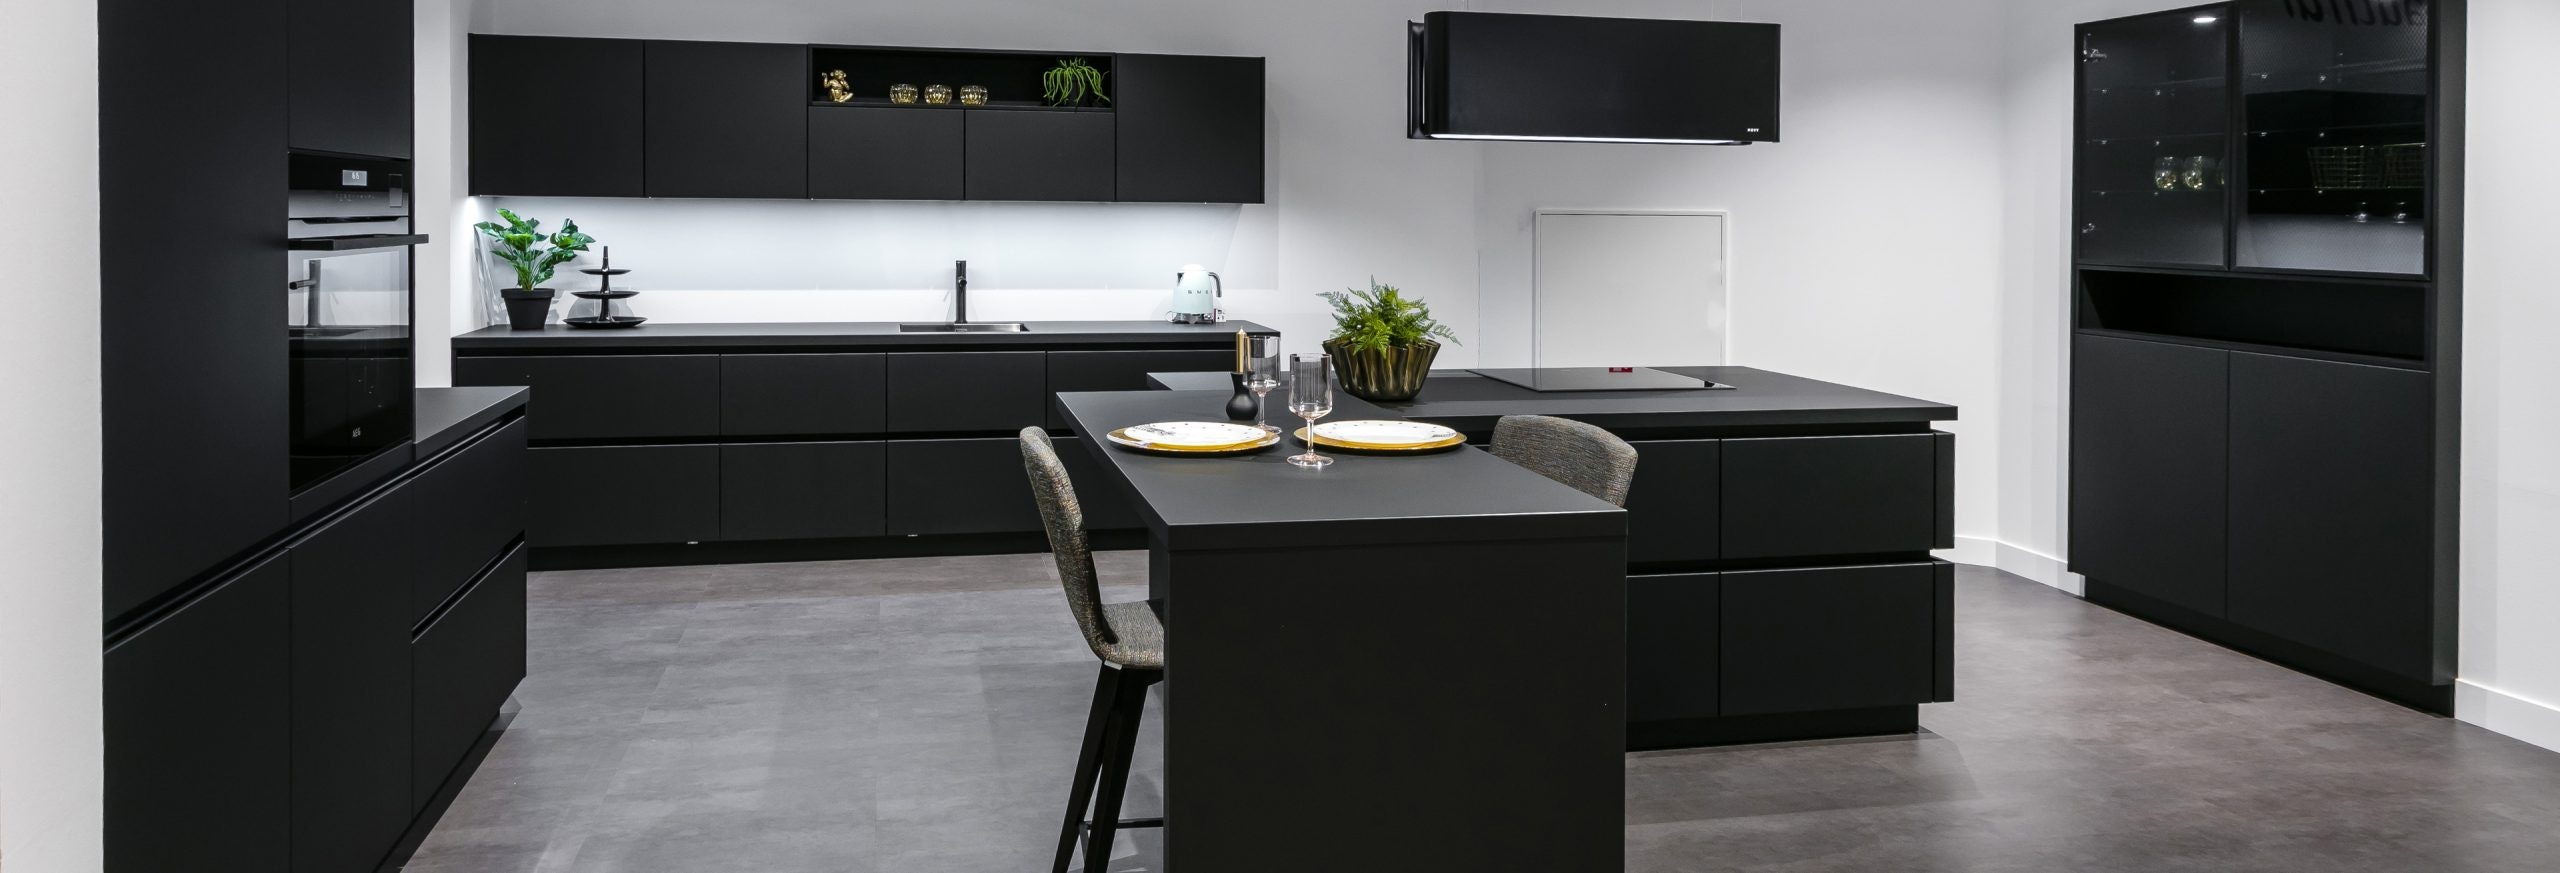 Keuken 1400205 - Mat zwarte keuken met kookeiland en zitgedeelte